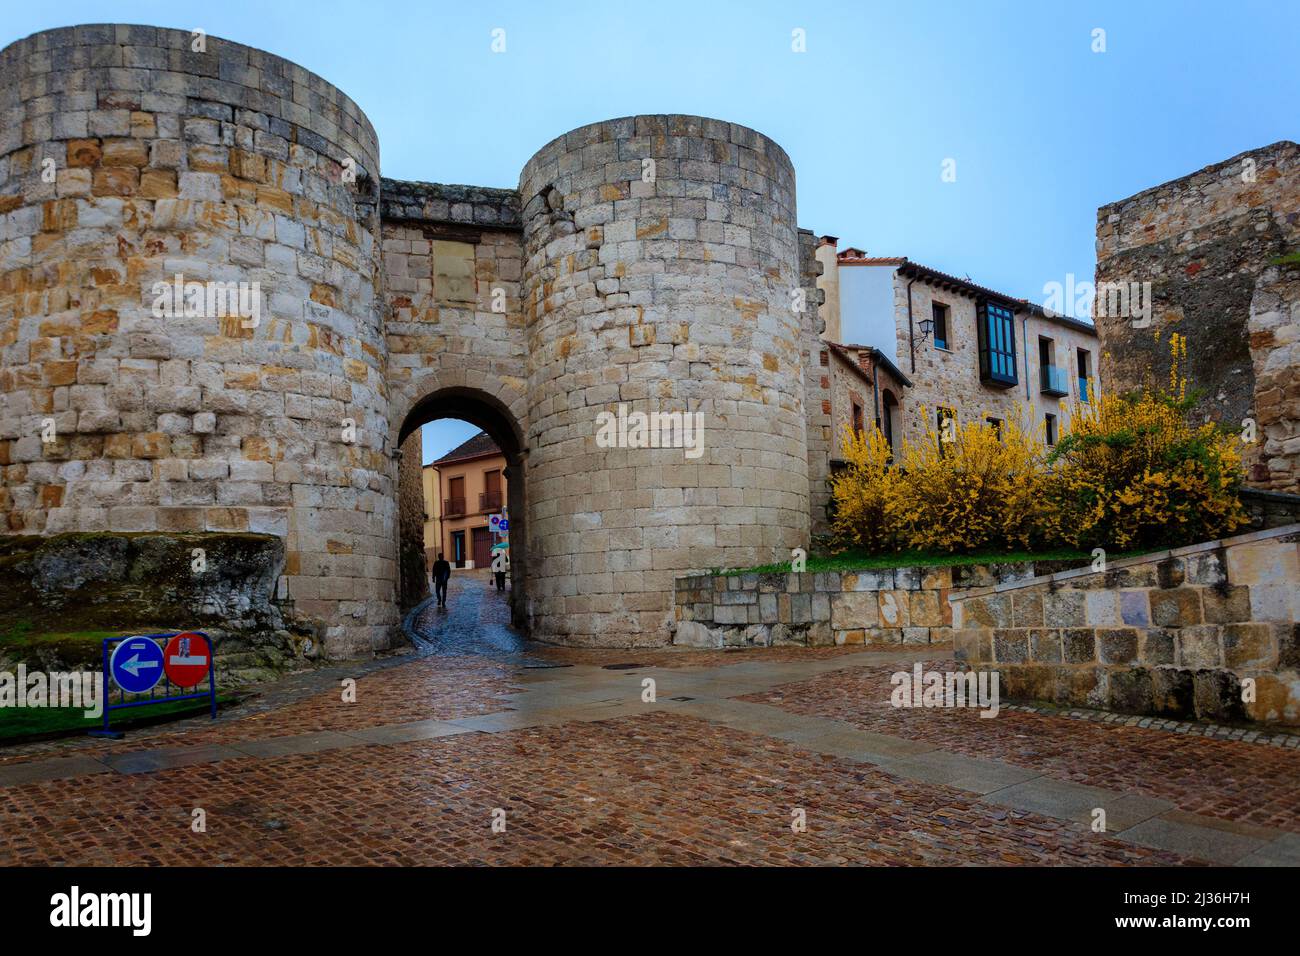 La Puerta de Doña Urraca es una de las puertas de la muralla de Zamora. Ha sido catalogado como Sitio de Interés Cultural. Foto de stock